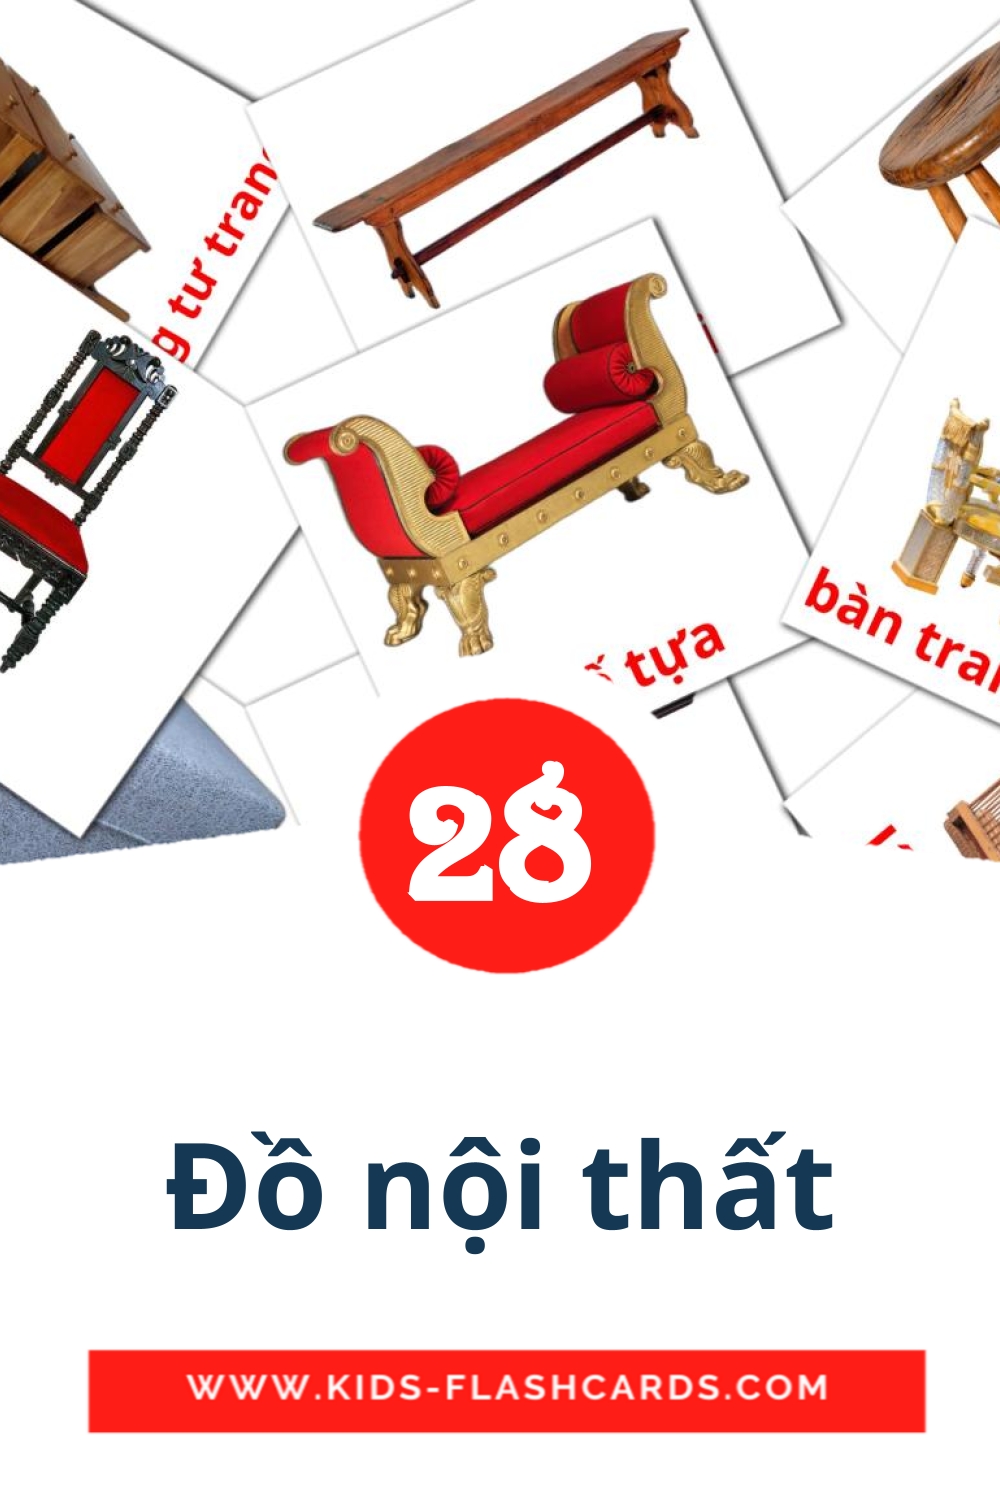 28 Cartões com Imagens de Đồ nội thất para Jardim de Infância em vietnamita